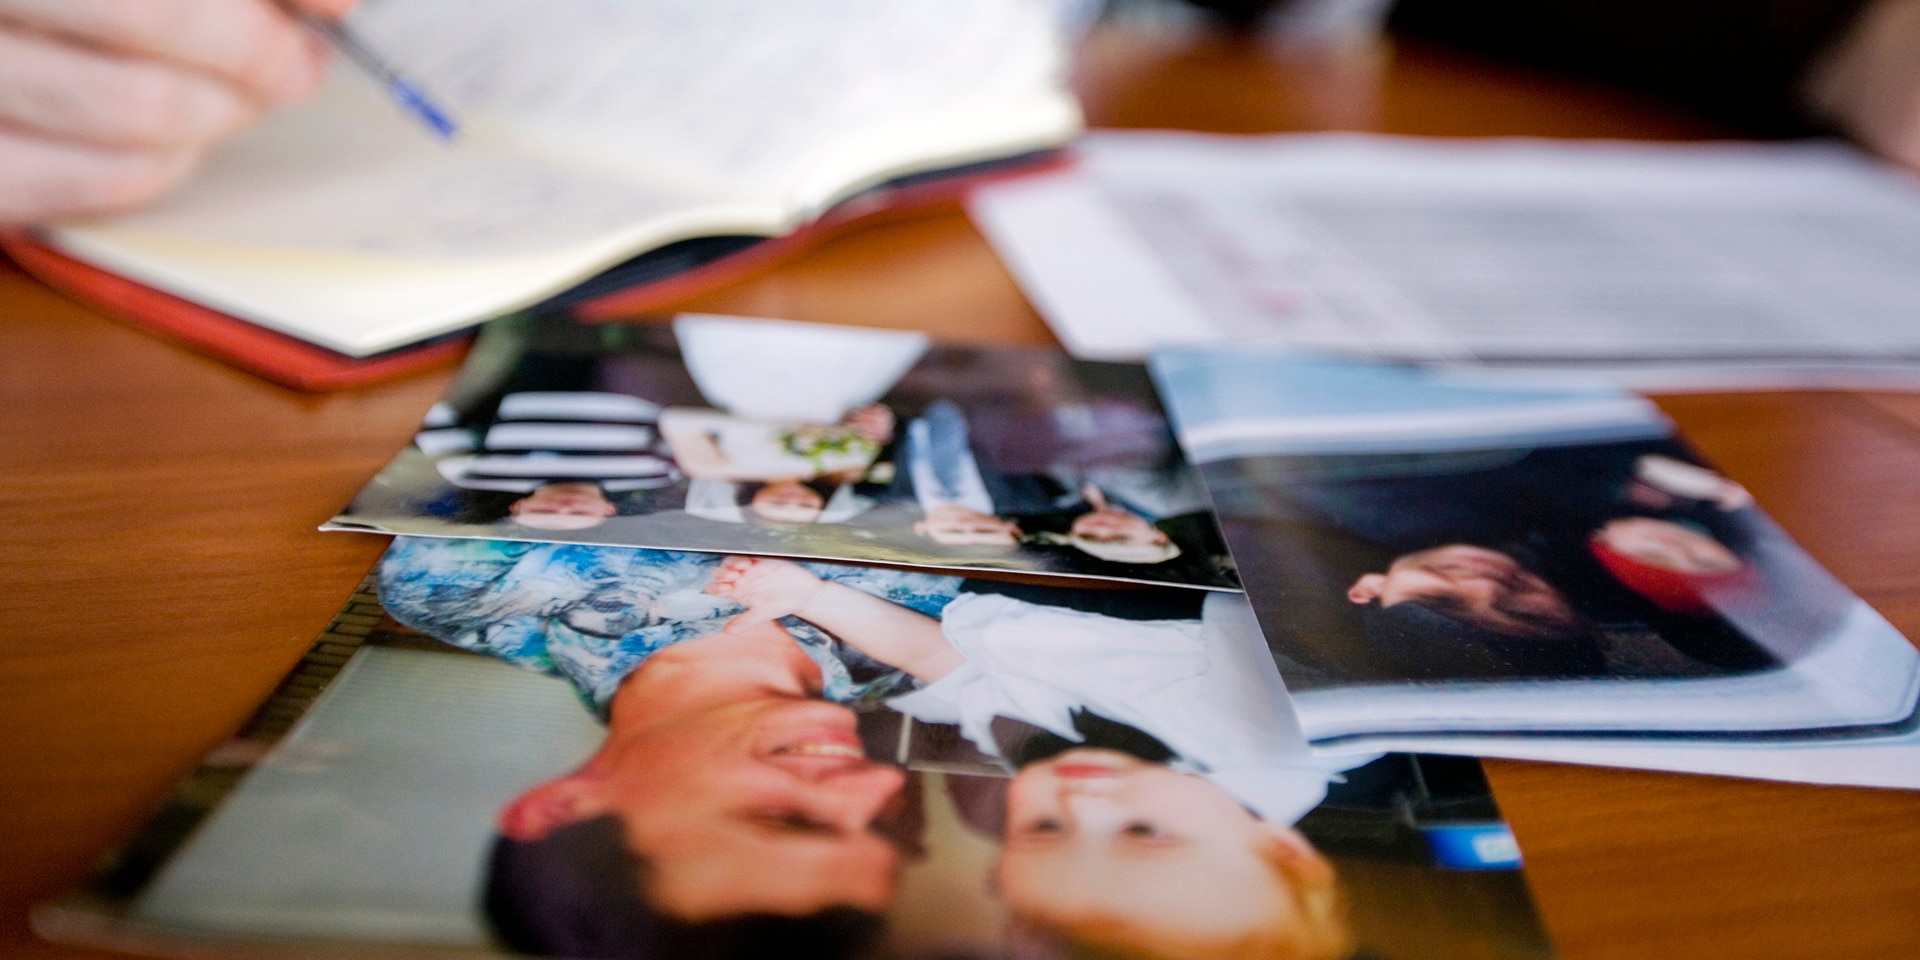  Foto di famiglia disposte su un tavolo e sullo sfondo una persona che compila un modulo del CICR.